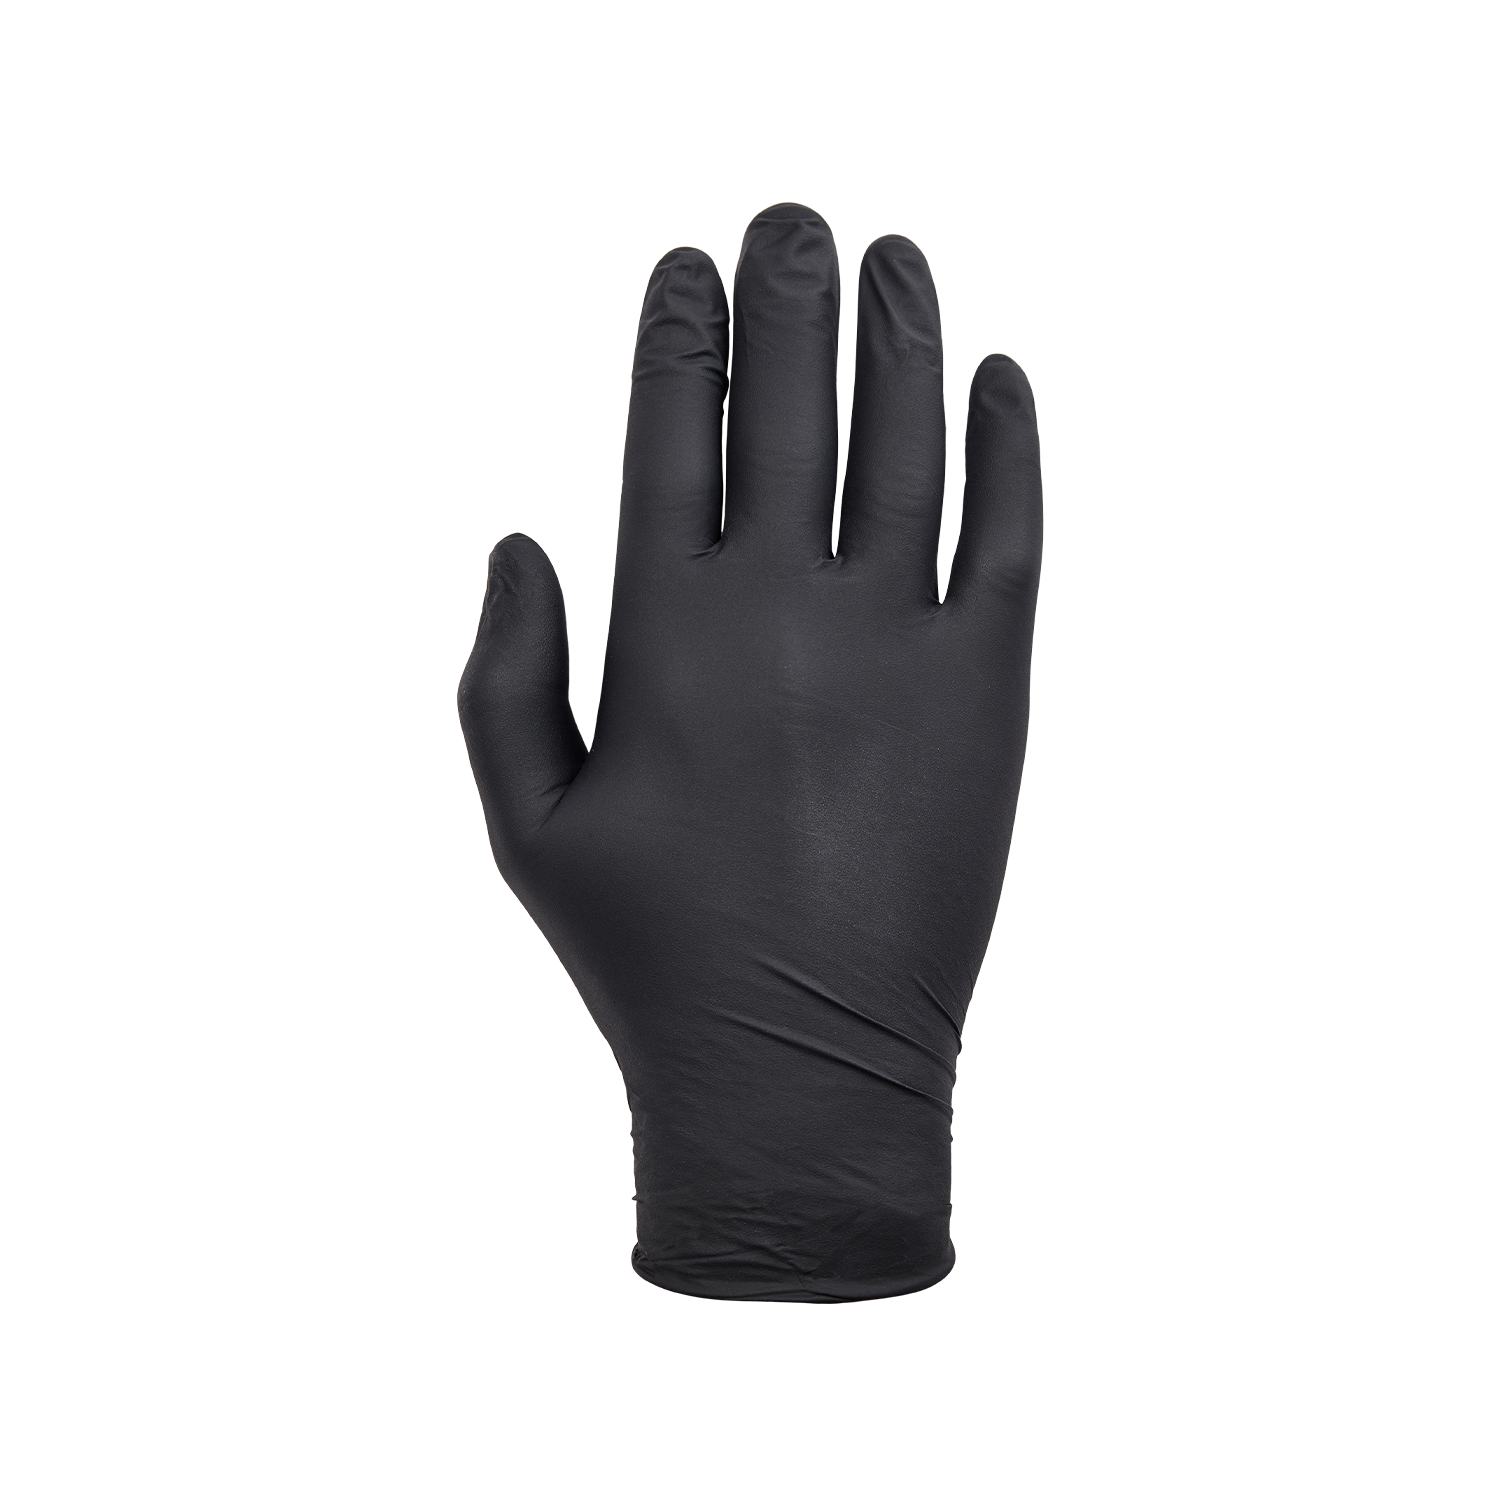 NORSE disposable zwarte nitril handschoenen voor eenmalig gebruik - maat 7/S